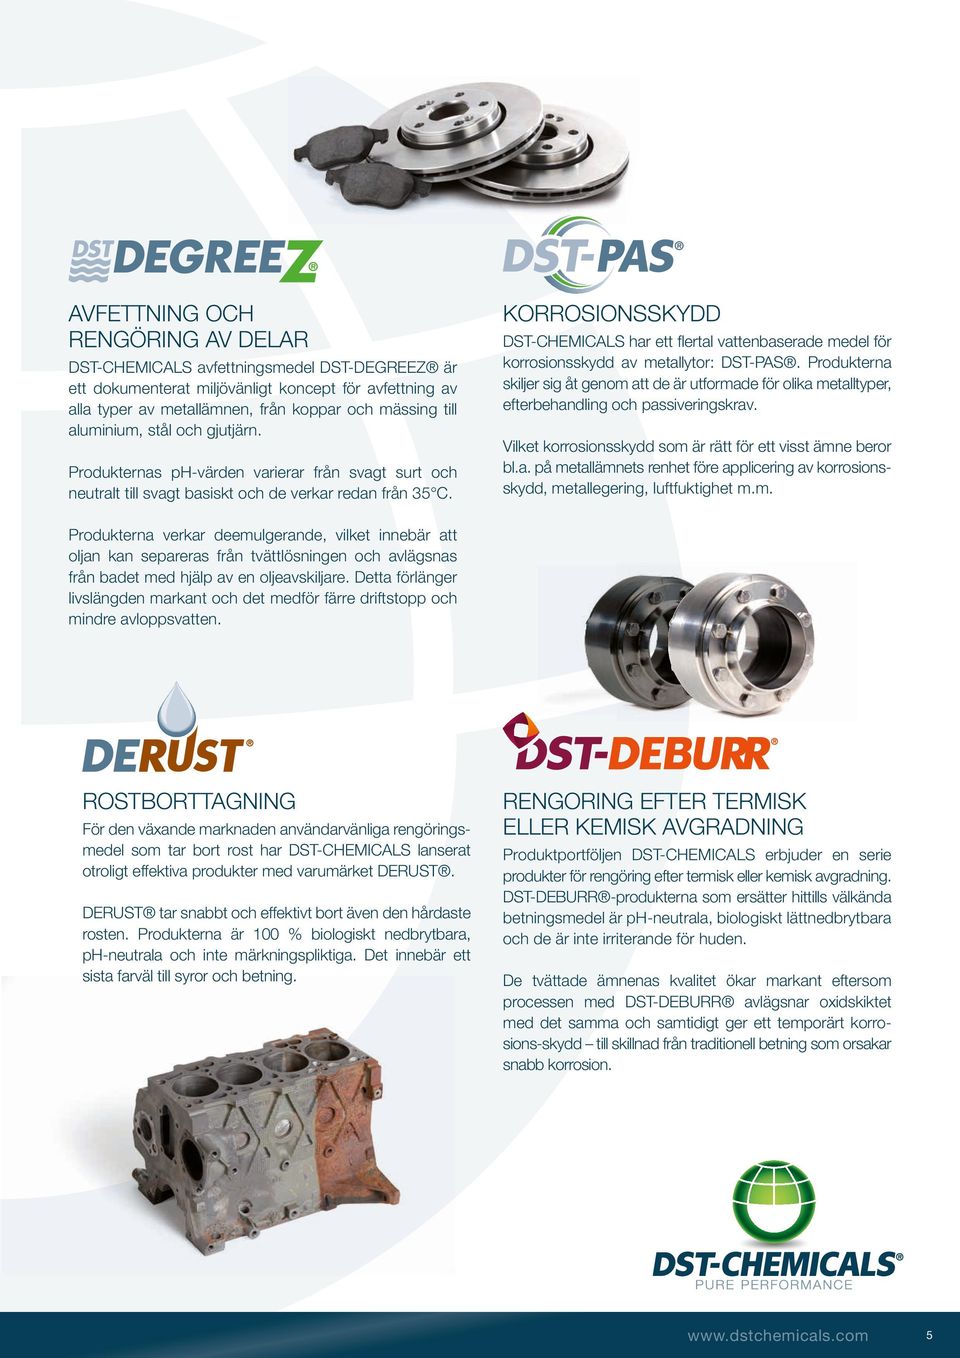 Korrosionsskydd DST-CHEMICALS har ett flertal vattenbaserade medel för korrosionsskydd av metallytor: DST-PAS.